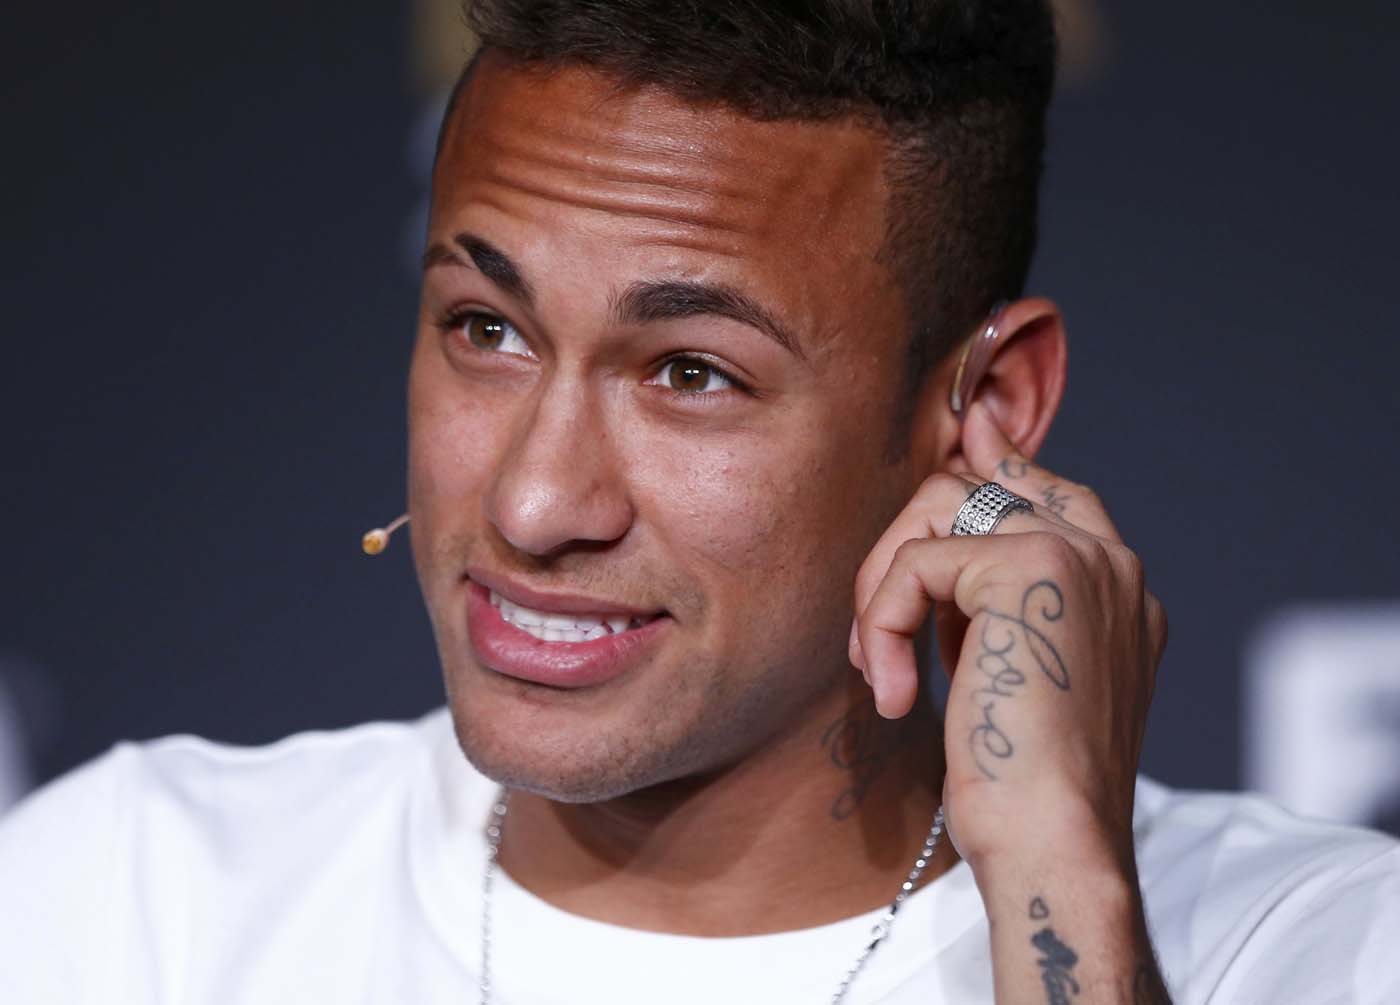 El juez cita a Neymar por estafa en su fichaje por el Barça